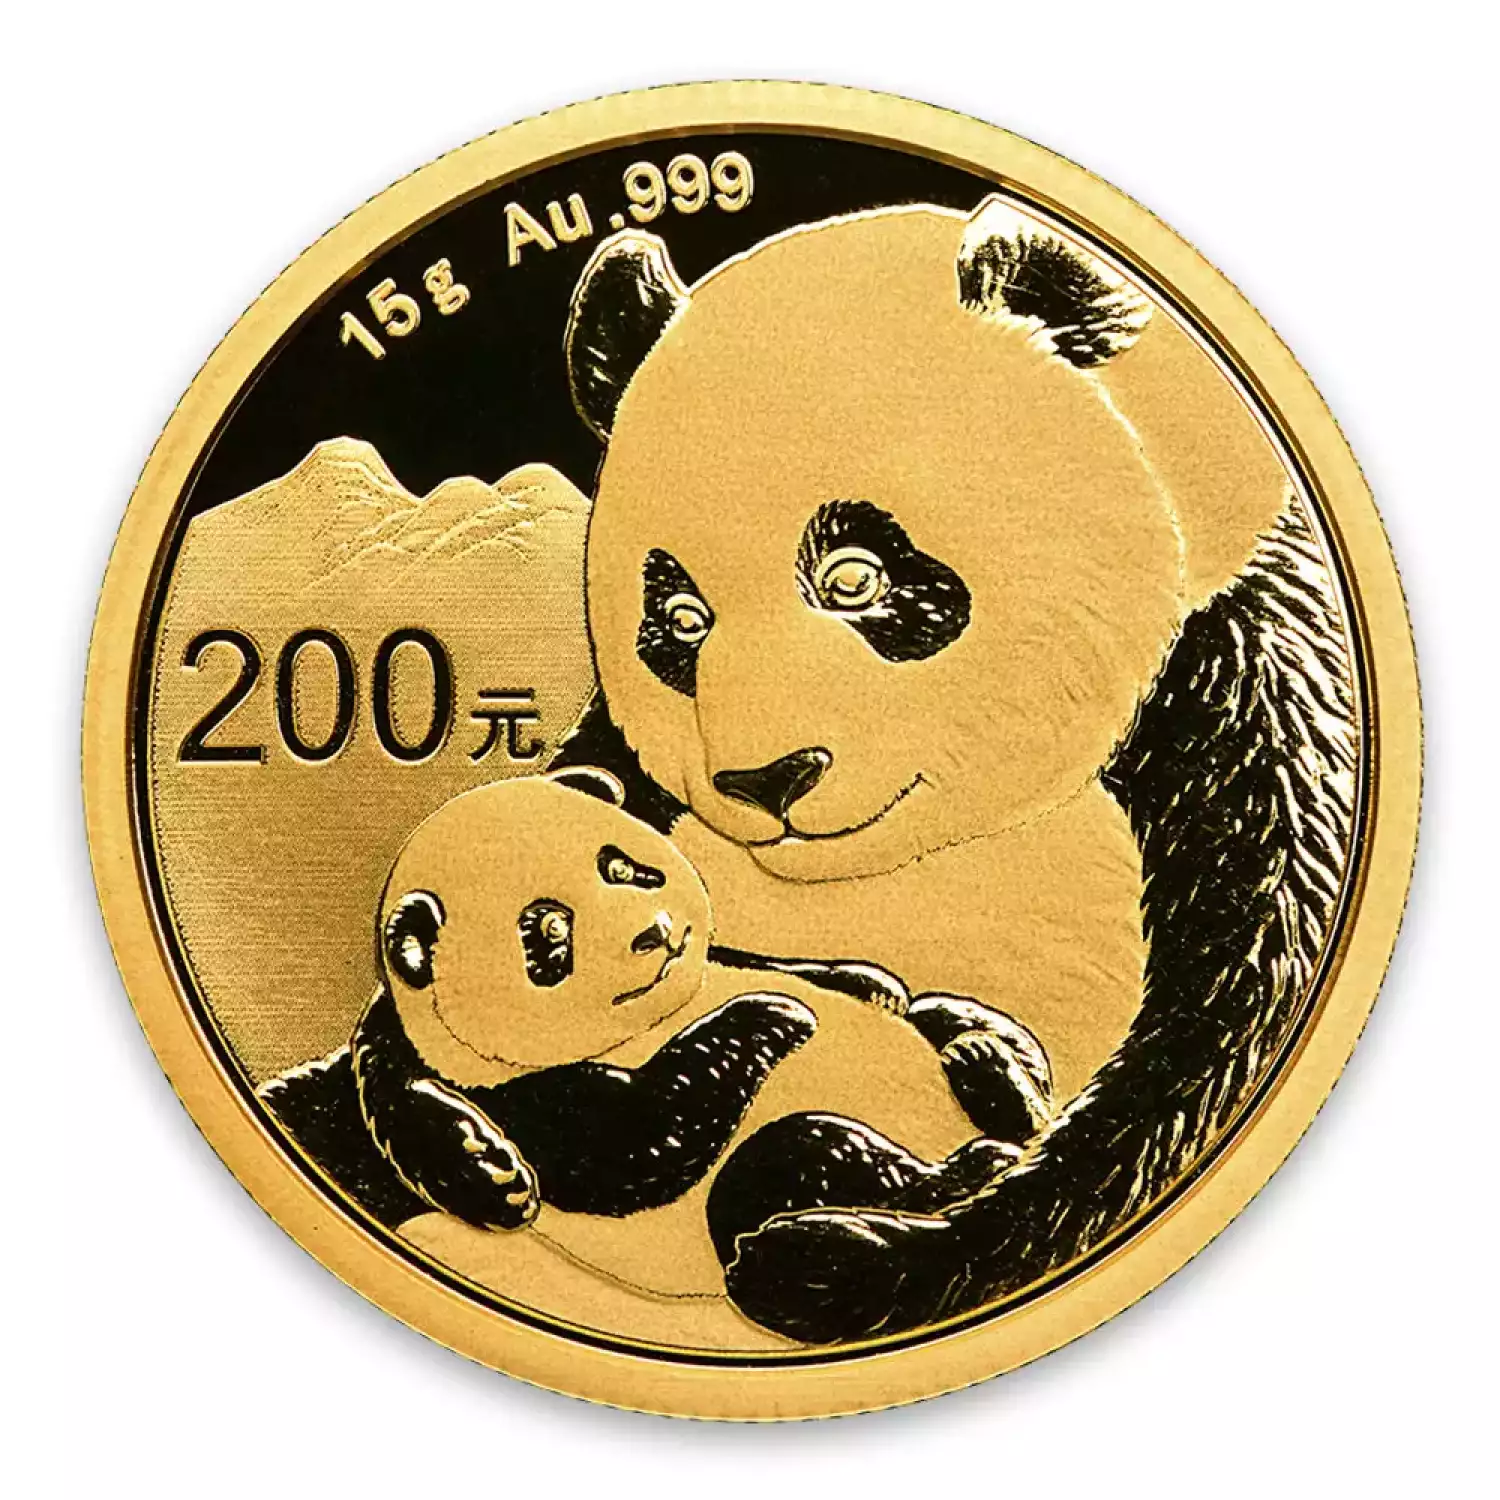 2019 15g Chinese Gold Panda (2)